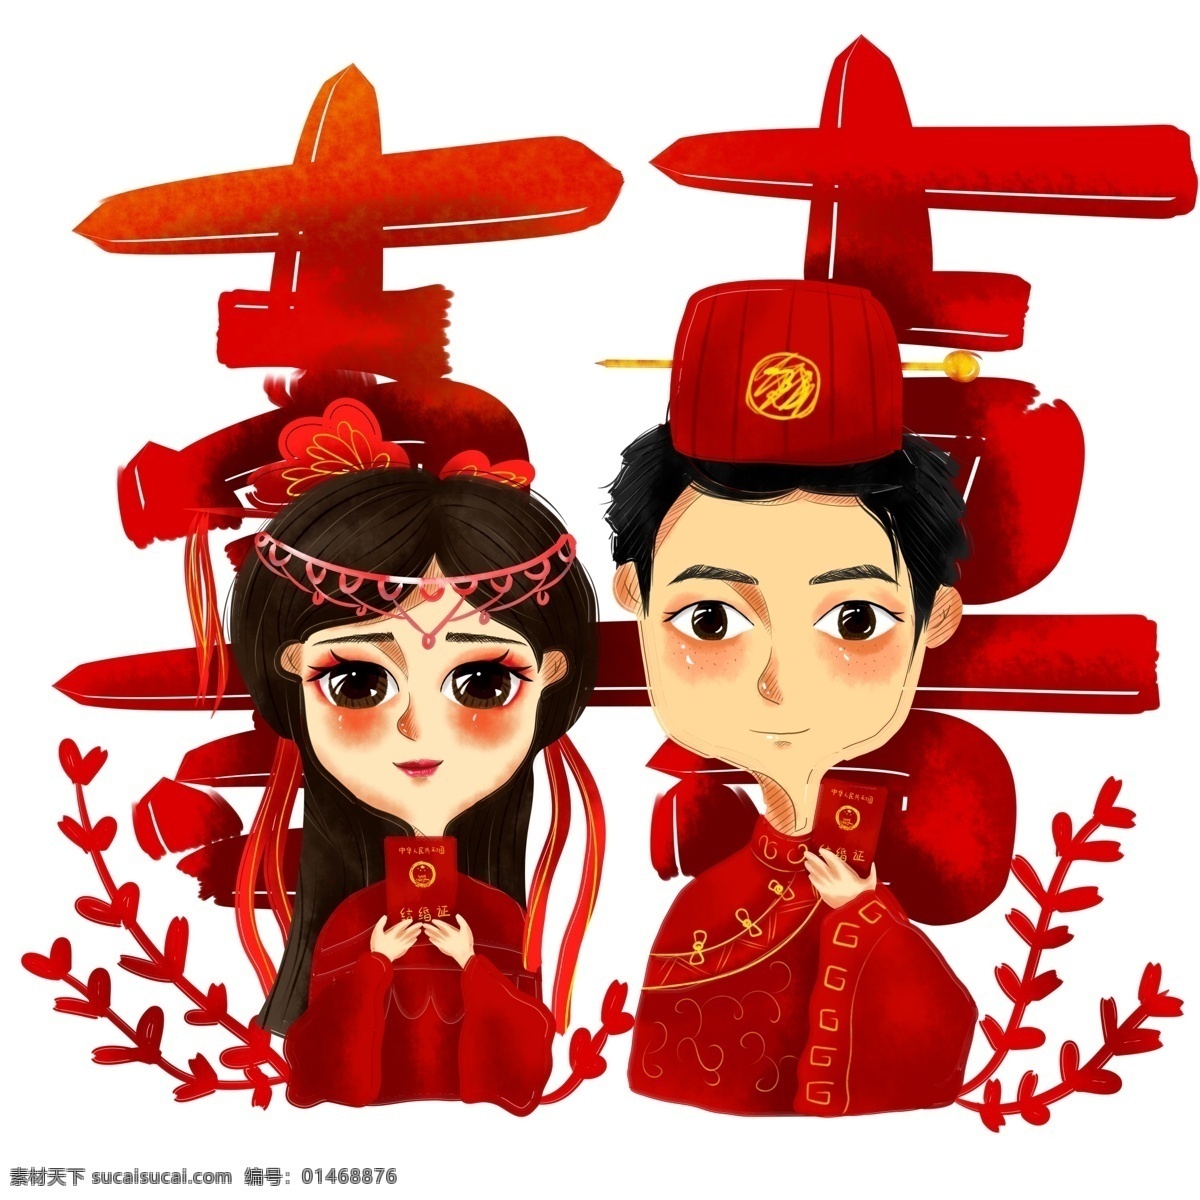 商用 手绘 结婚 爱情 结婚照 官 宣 结婚证 喜字 人物 插画 红色 中式 中式婚礼 官宣 古风 海报素材 元素